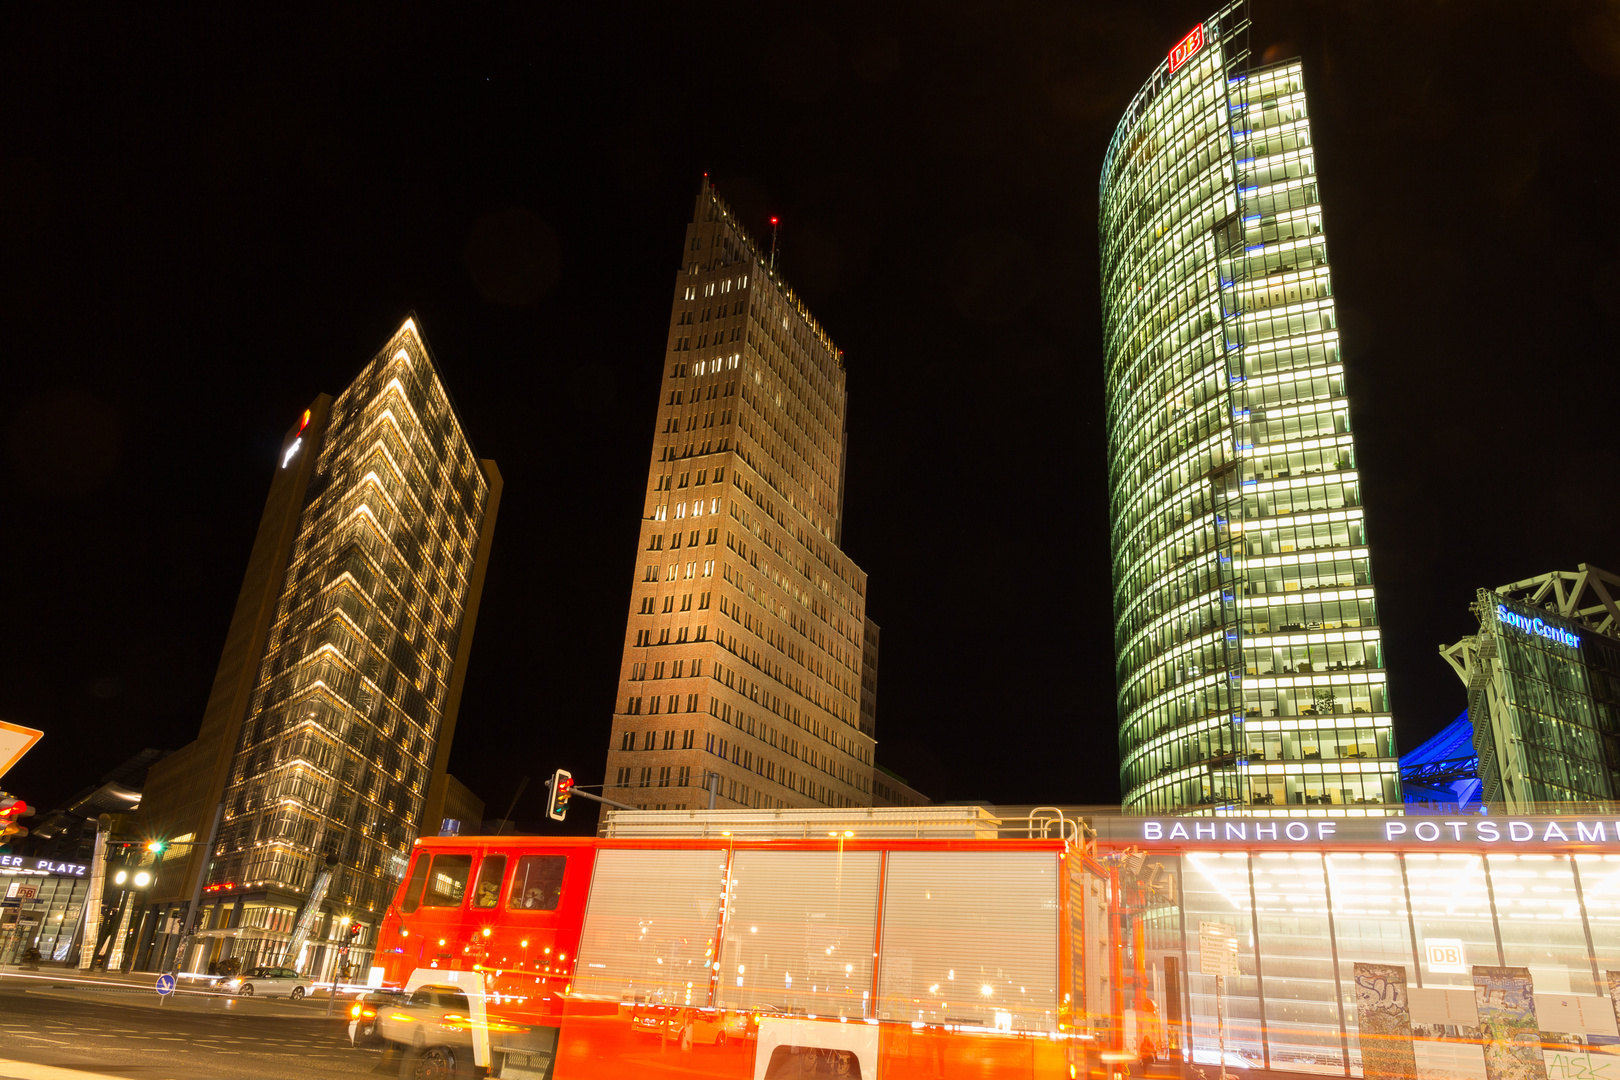 Potsdamer Platz by Night